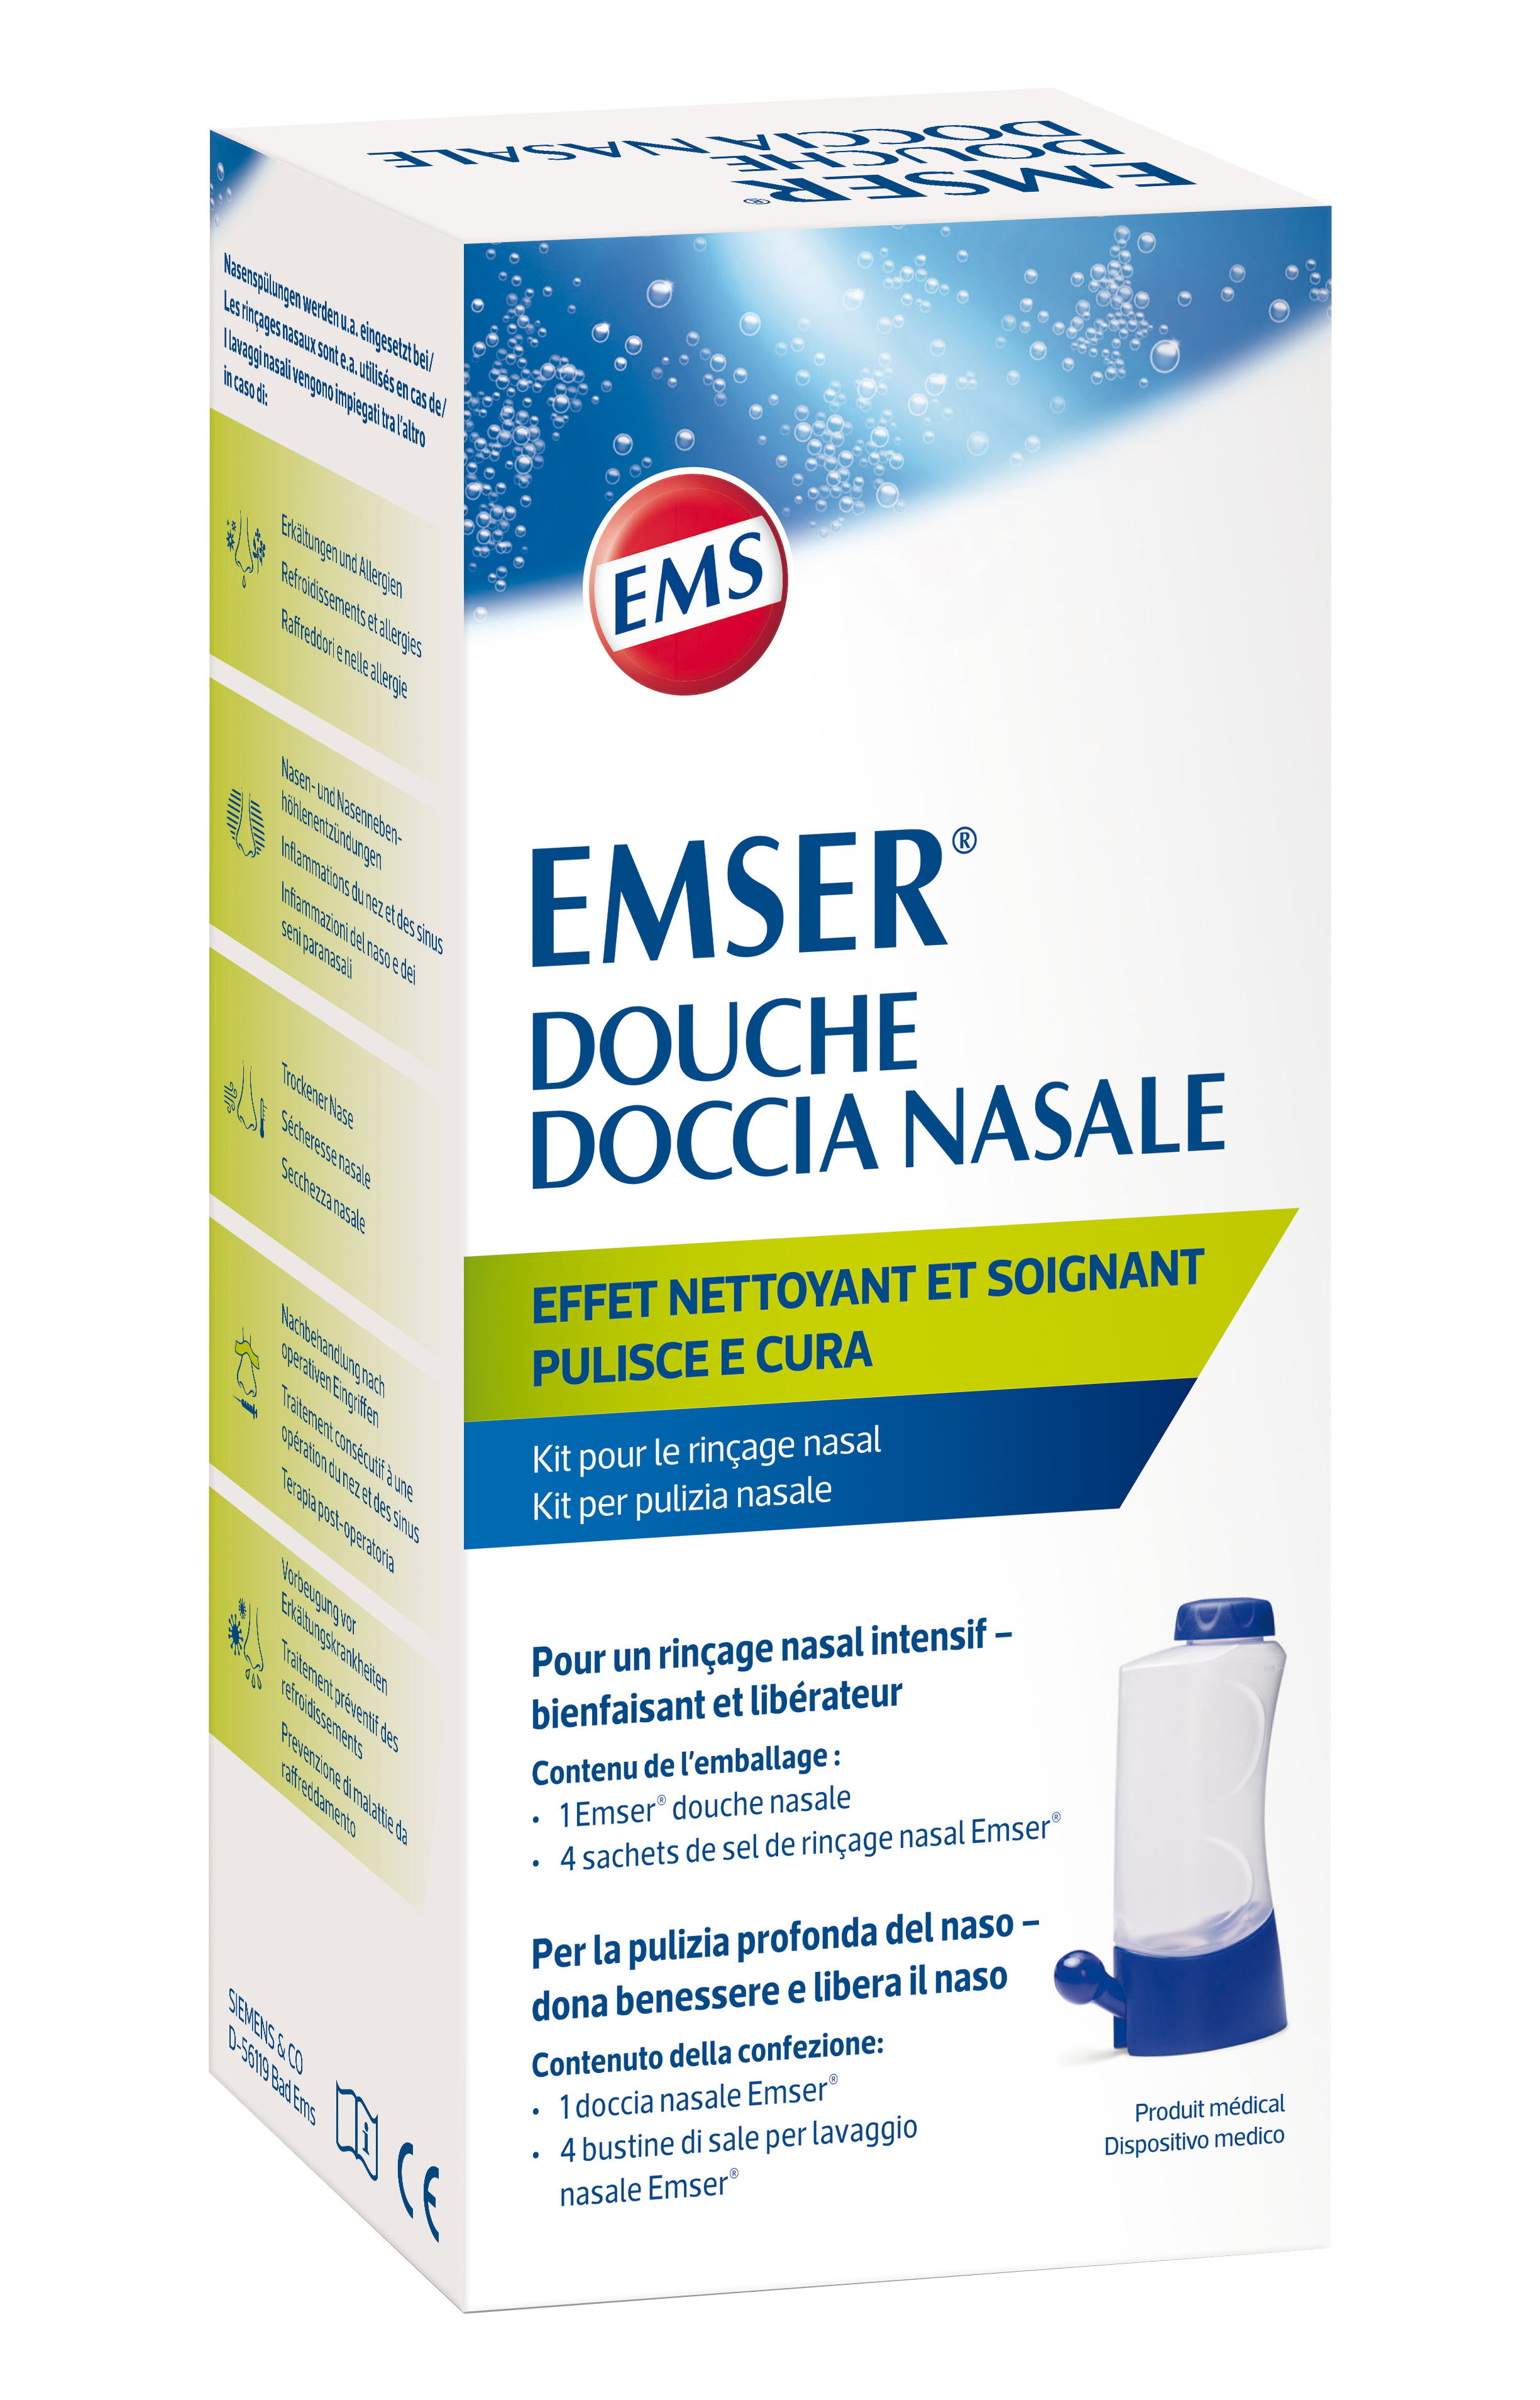 Rinçage nasal en cas de refroidissement avec Emser